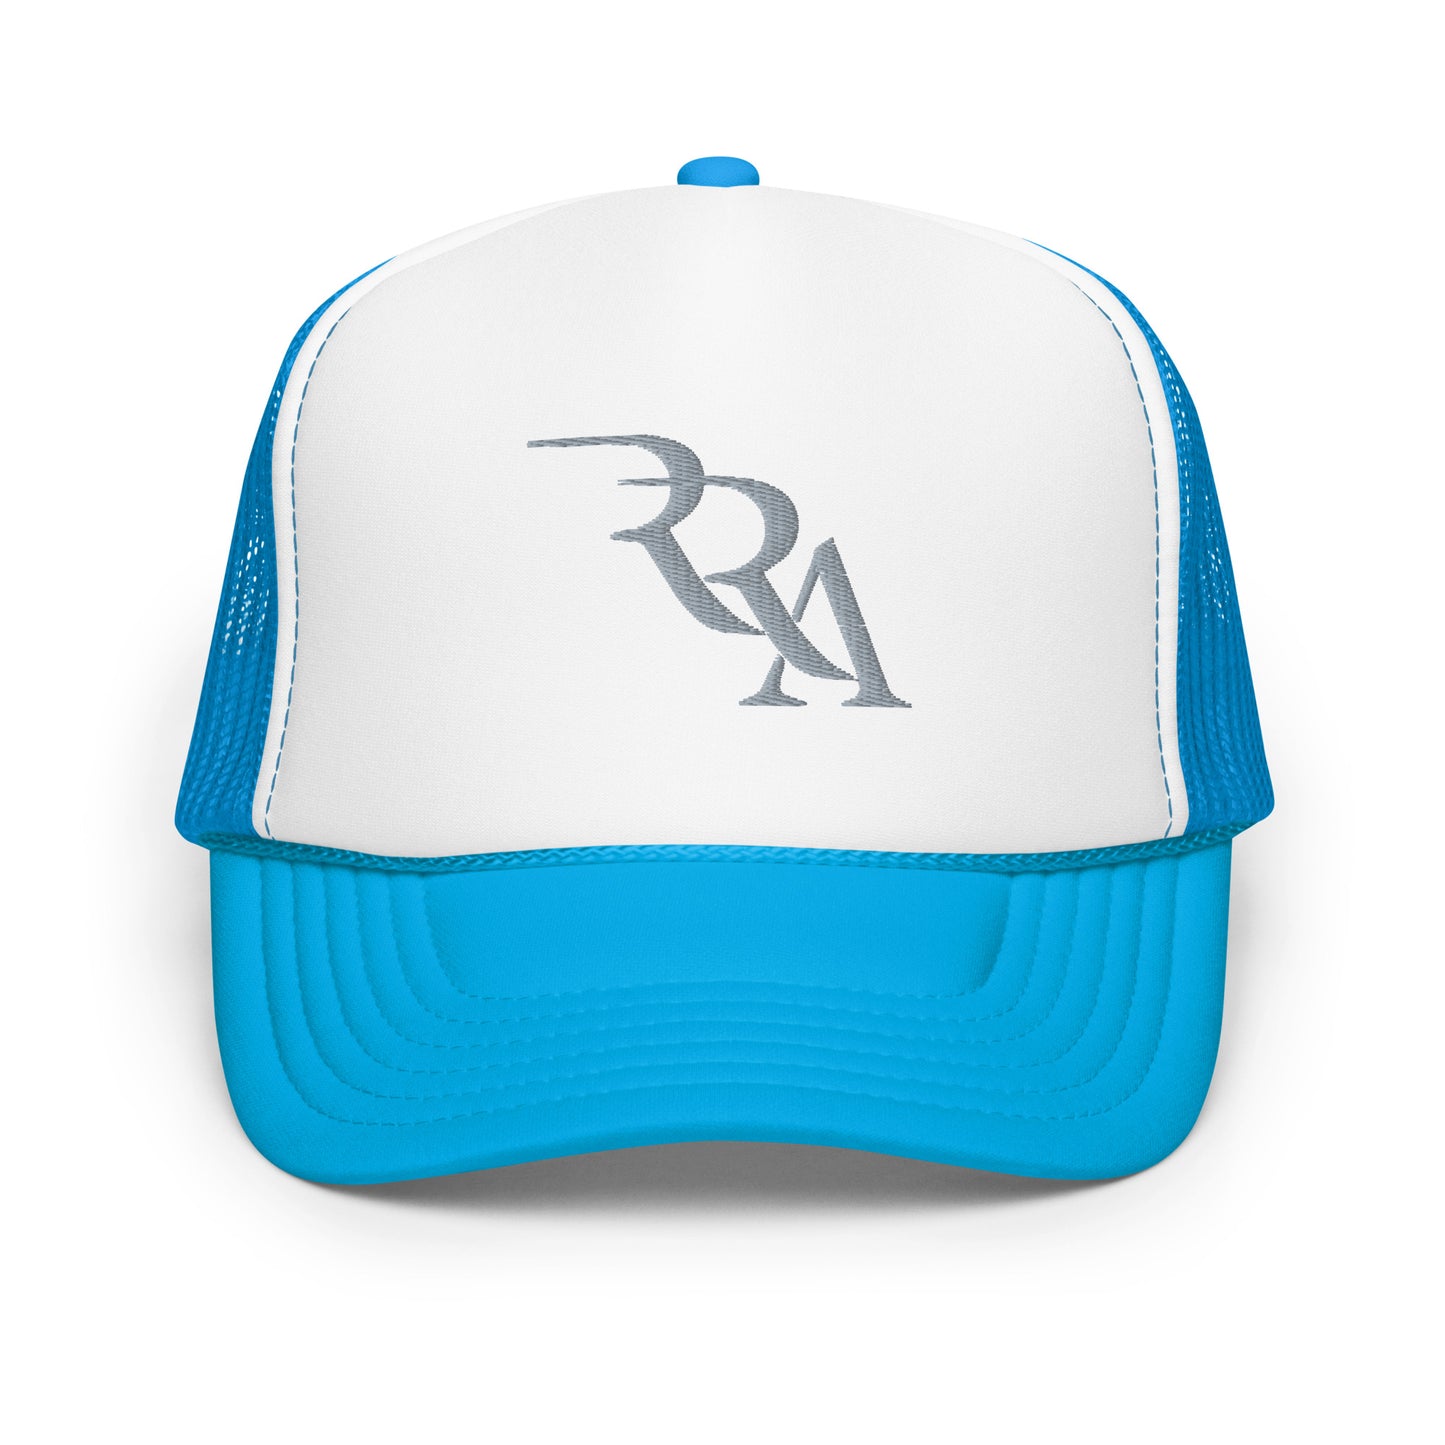 RRA - Silver Foam trucker hat